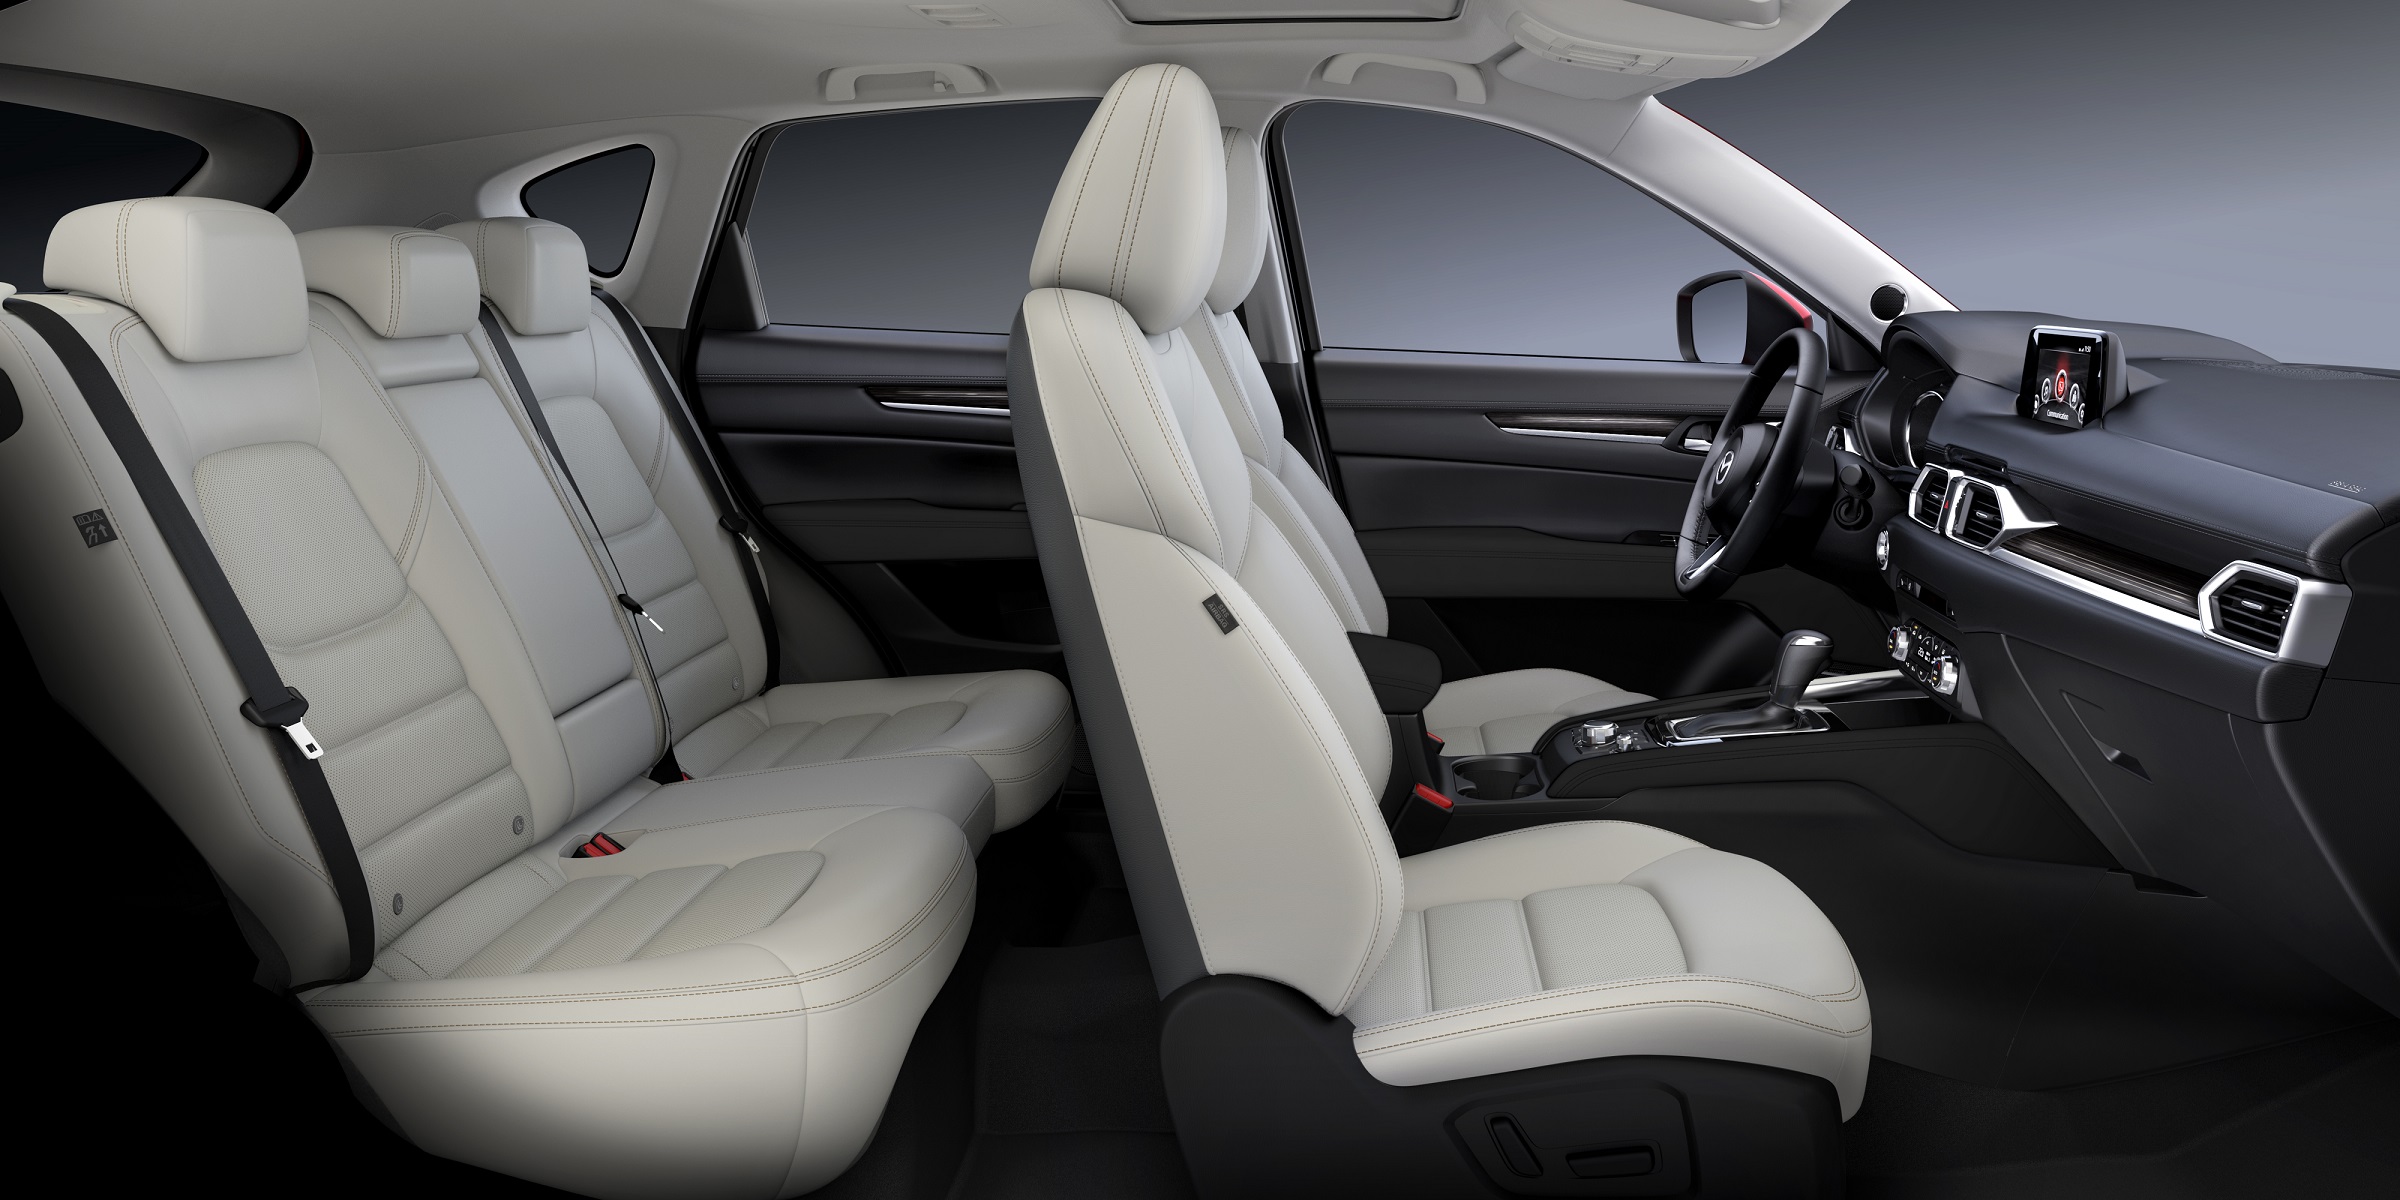 Ghế ngồi bọc da trên Mazda CX-5 2020